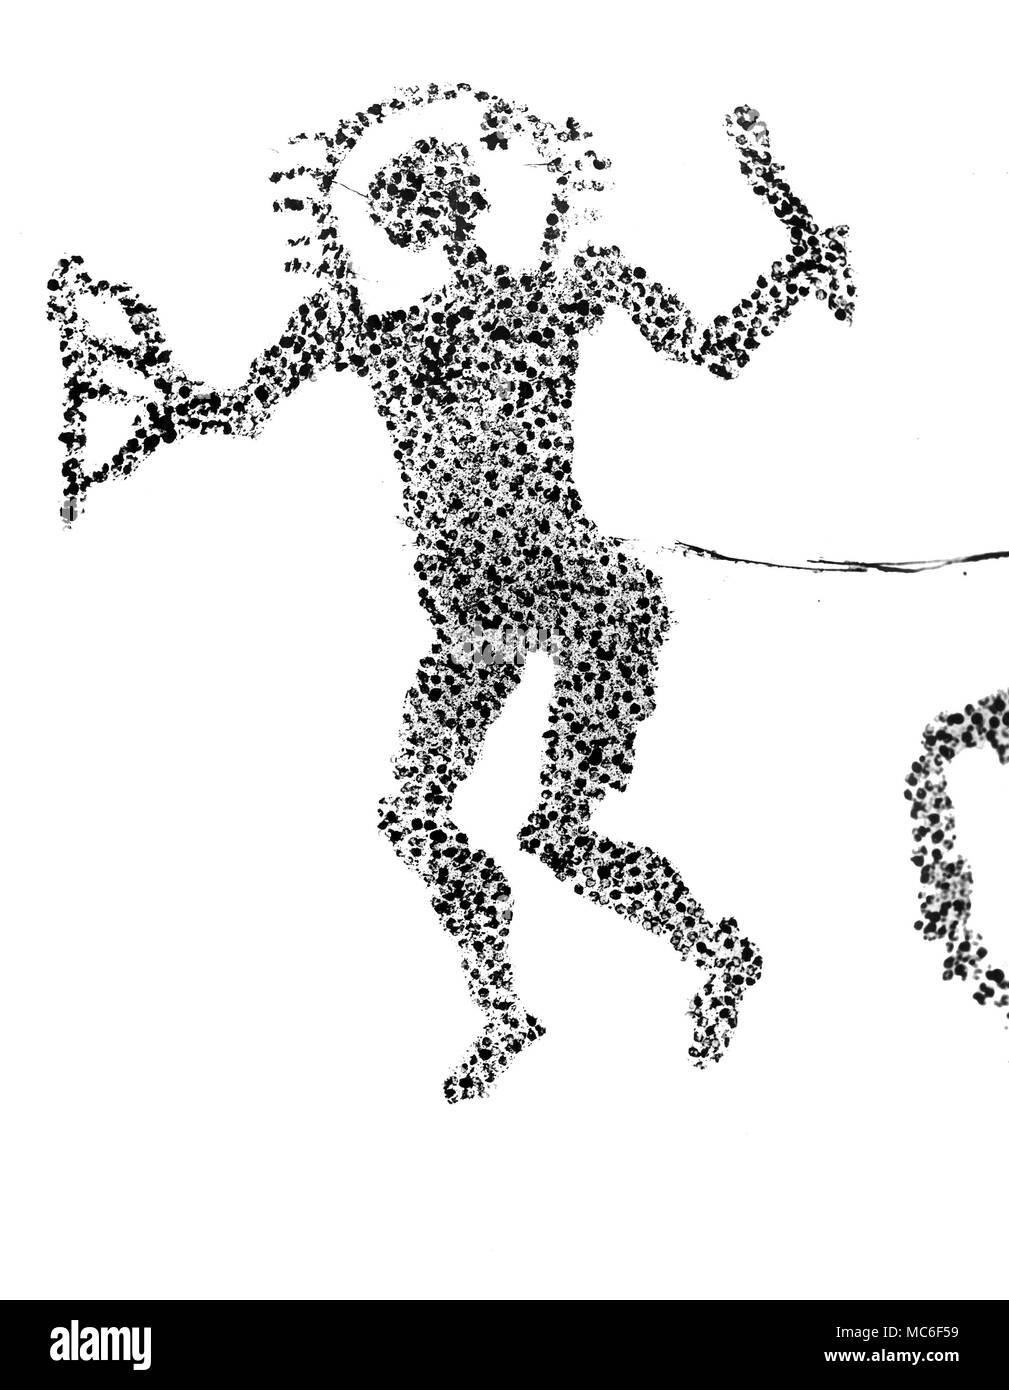 El llamado astronauta de la serie de grabados rupestres prehistóricos, por encima de la ciudad de Capo di Ponte, Italia. Ilustraciones basadas en fotografías. Foto de stock